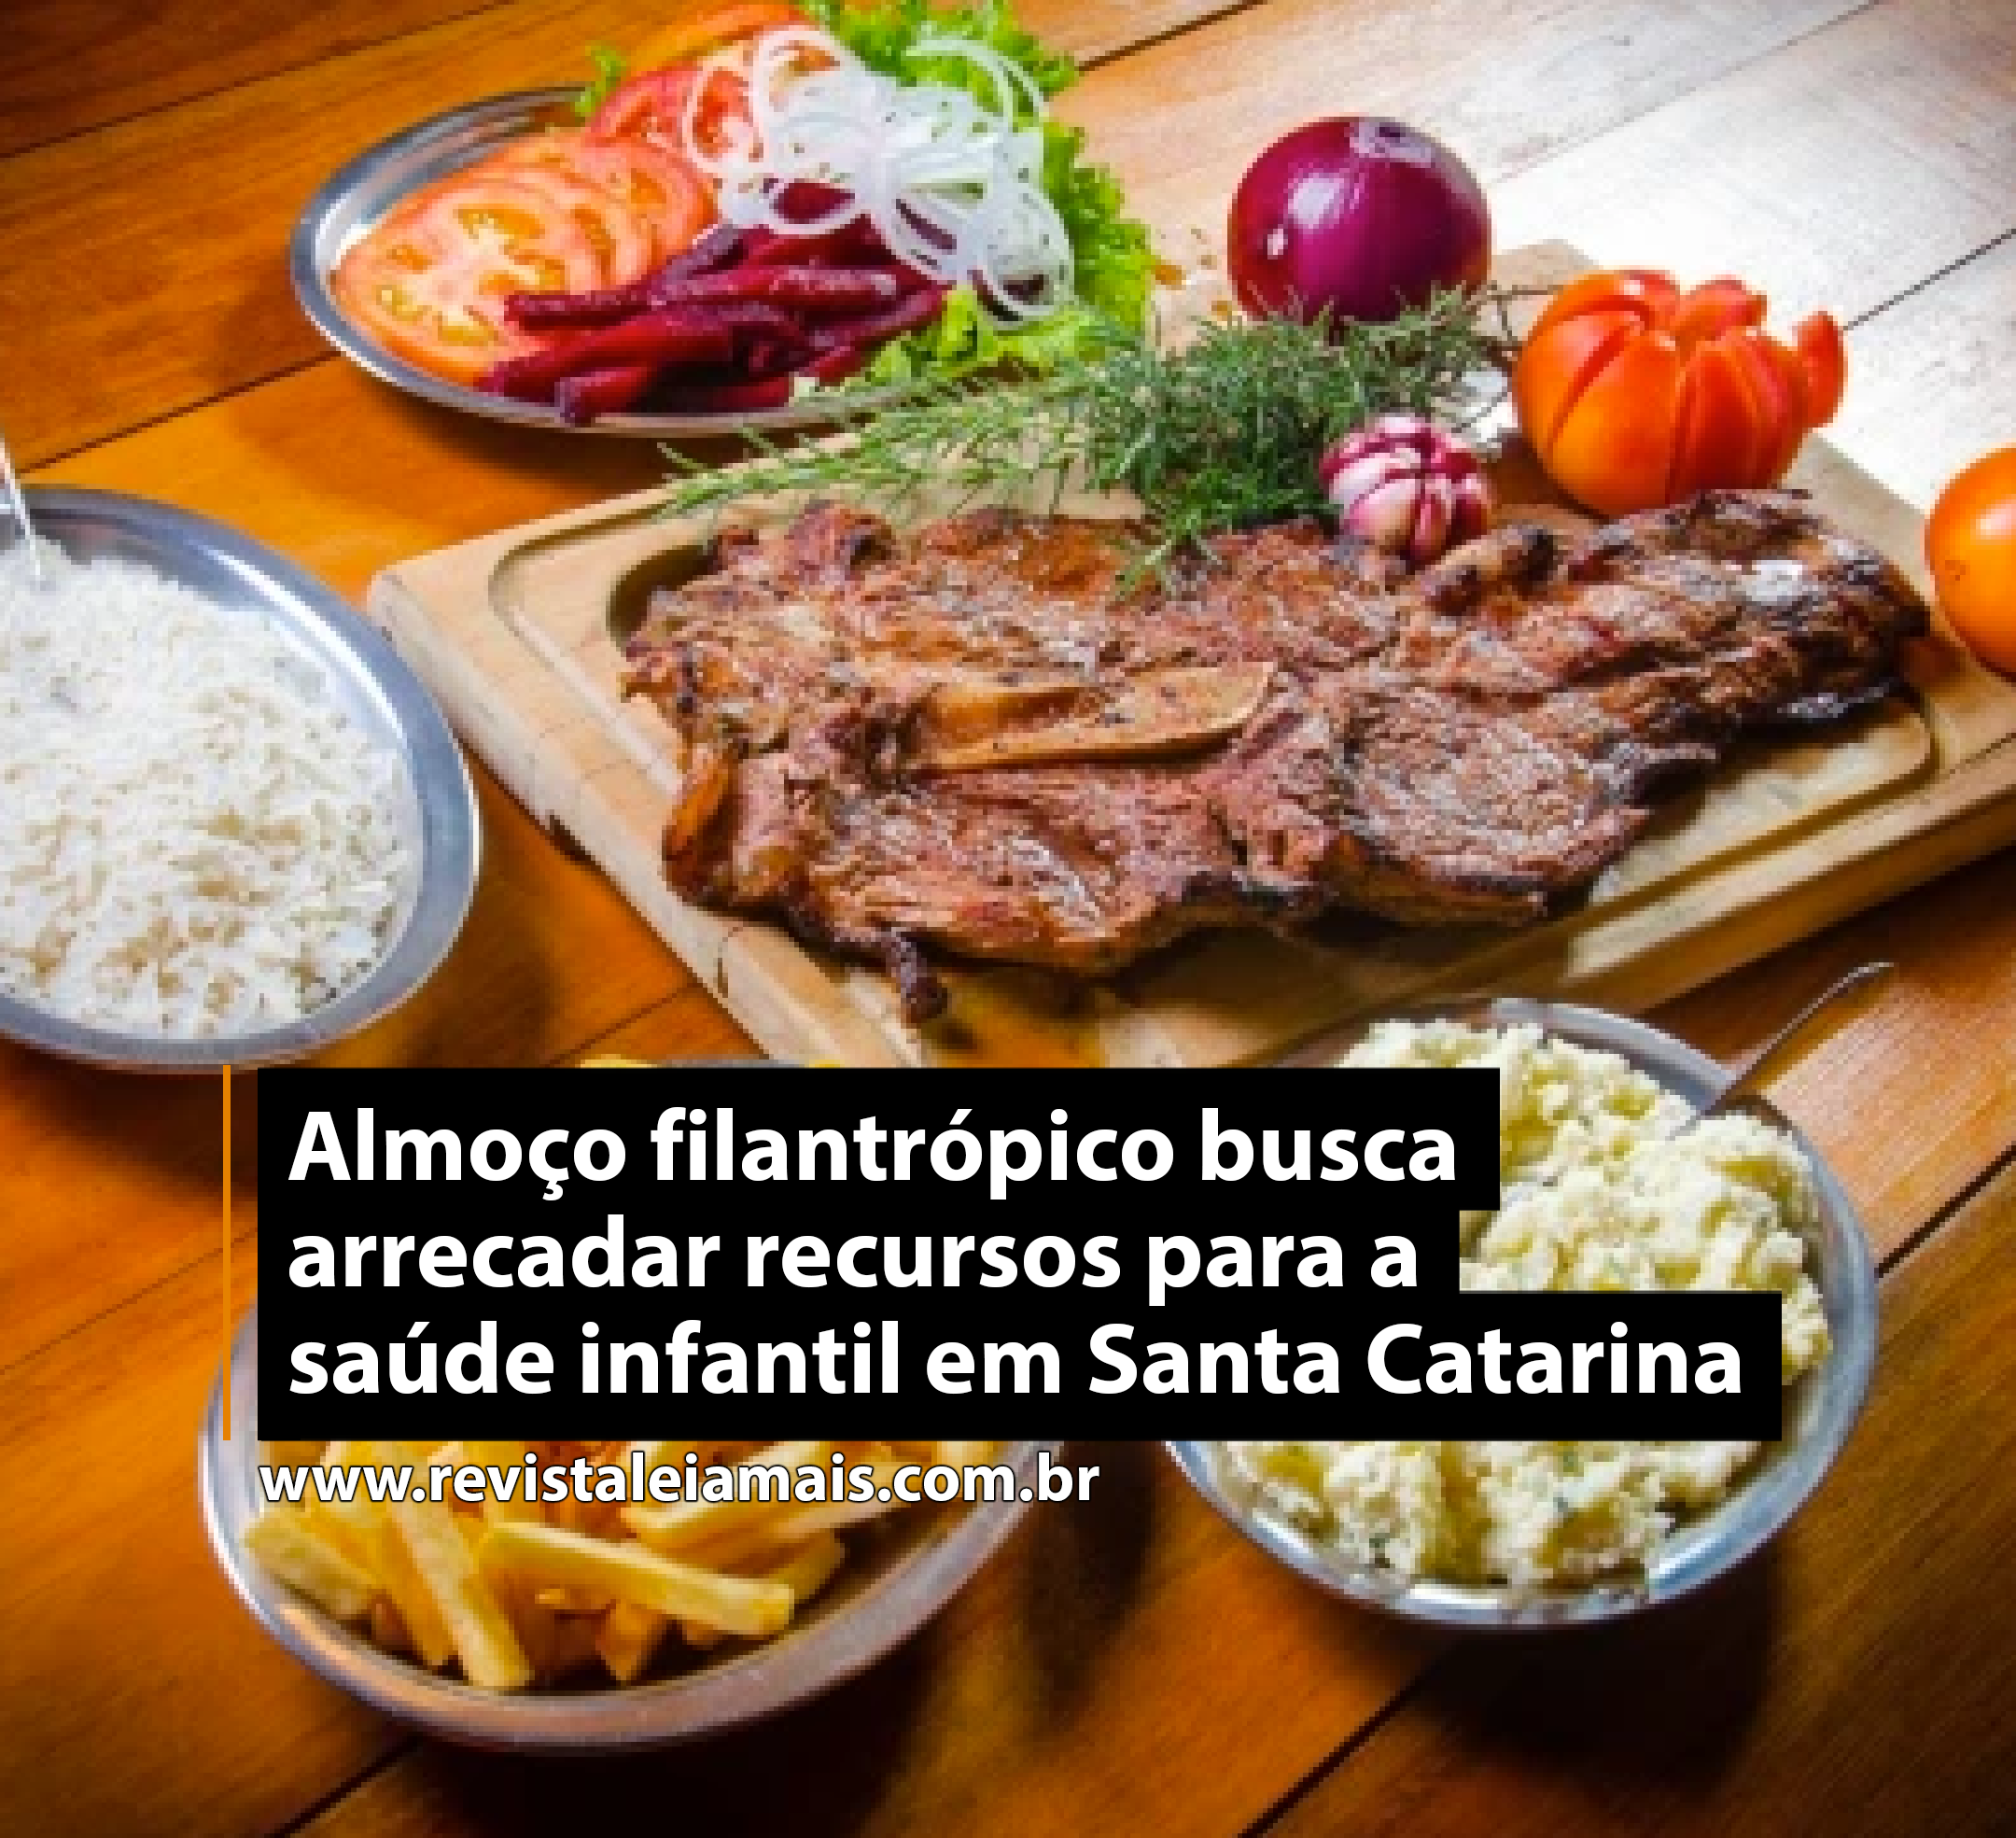 Almoço filantrópico busca arrecadar recursos para a saúde infantil em Santa Catarina